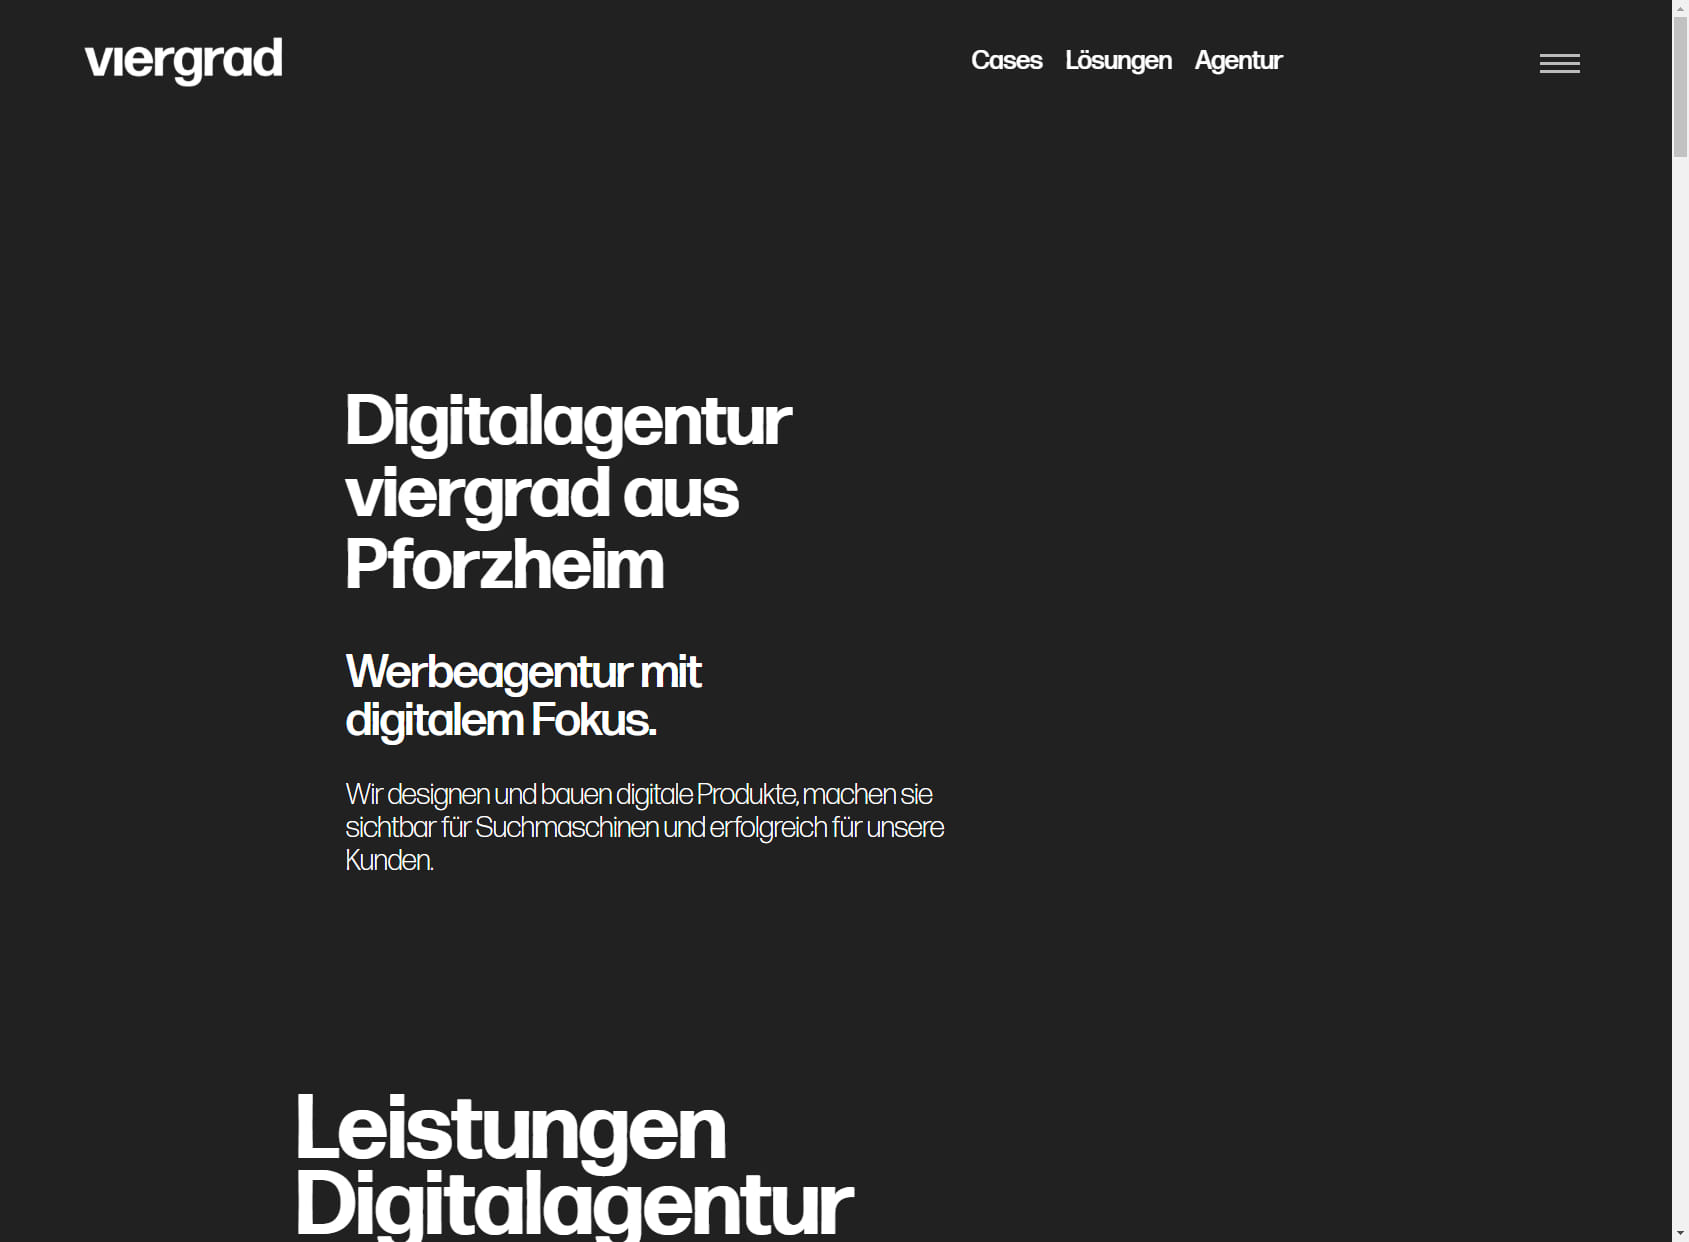 viergrad GmbH - Digitalagentur Pforzheim